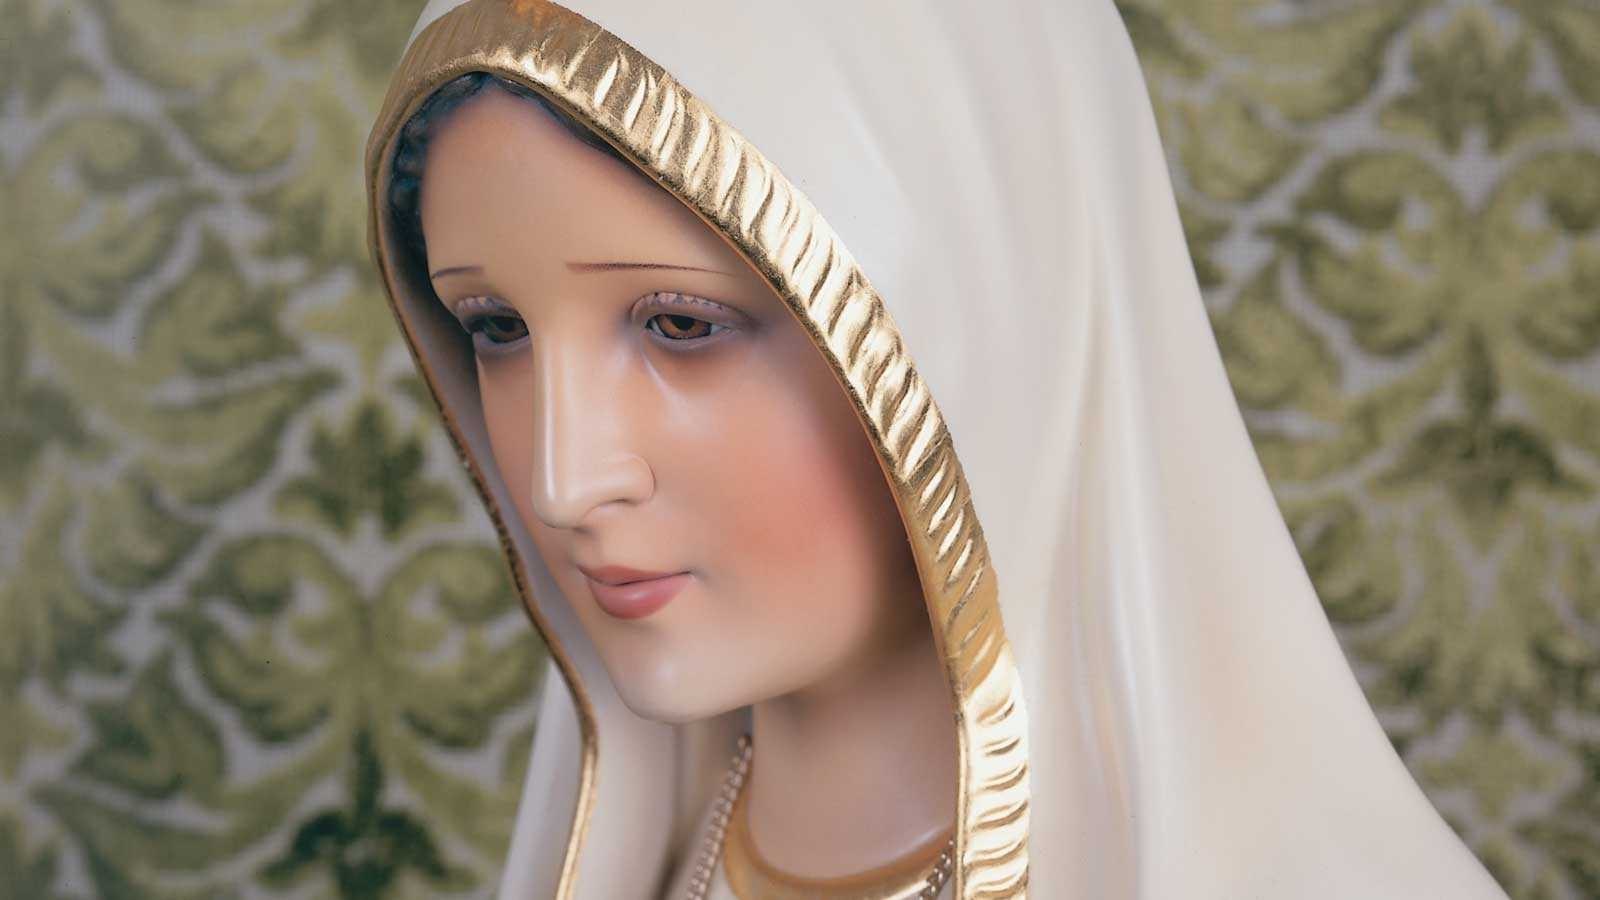 Hoe zag Onze Lieve Vrouw er in Fatima uit?